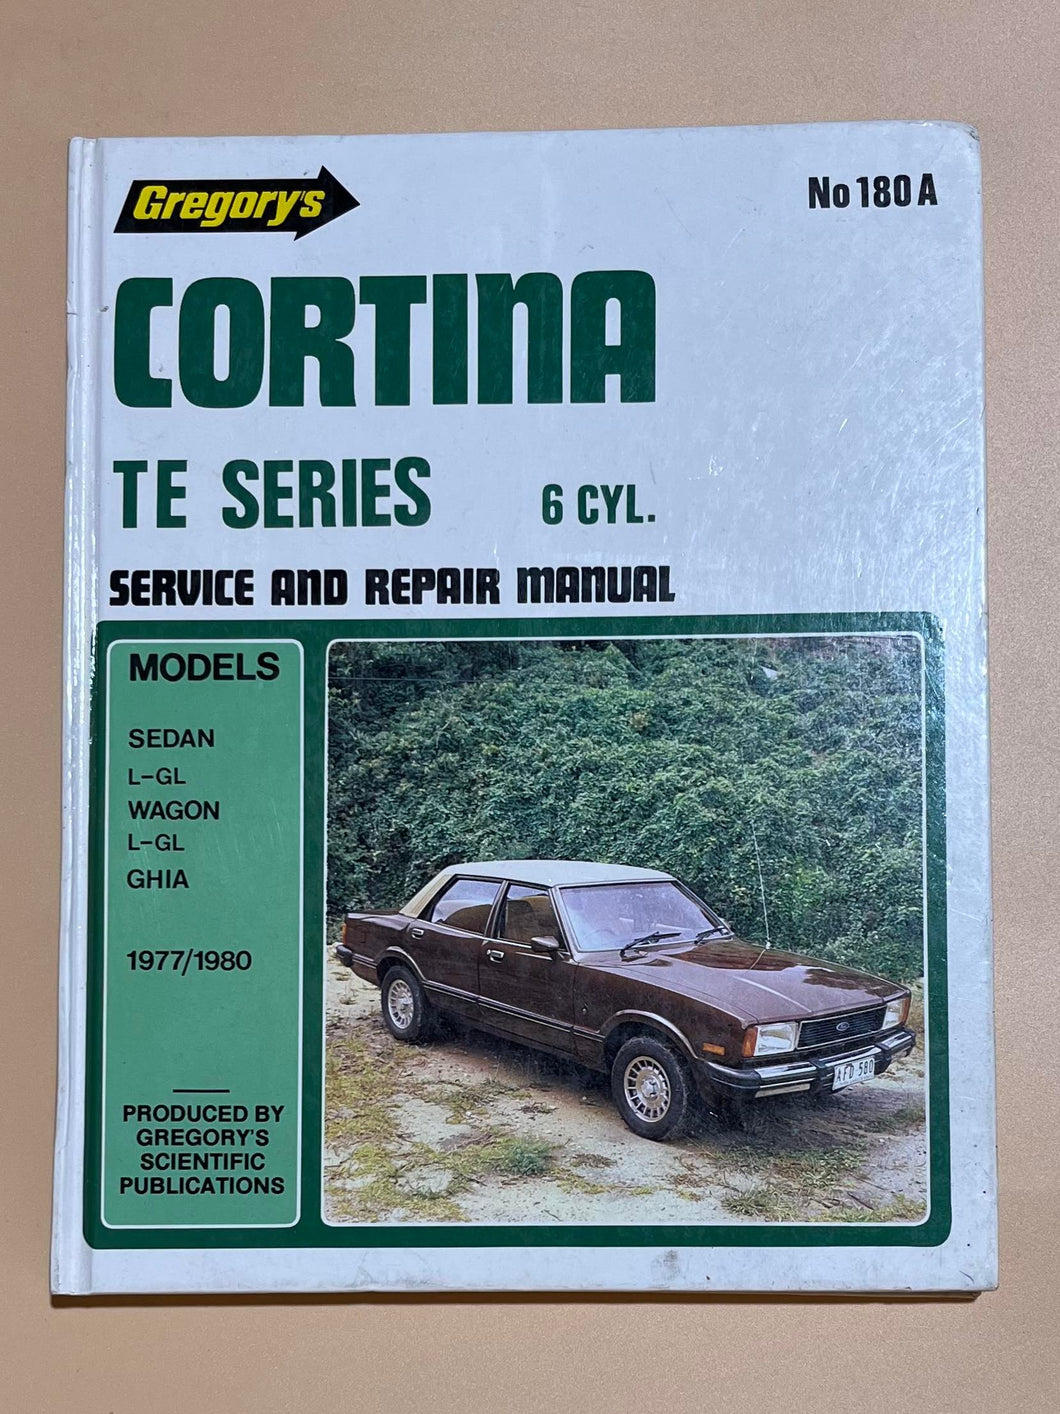 Ford Cortina TE Series 6 Cylinder Service and Repair Manual